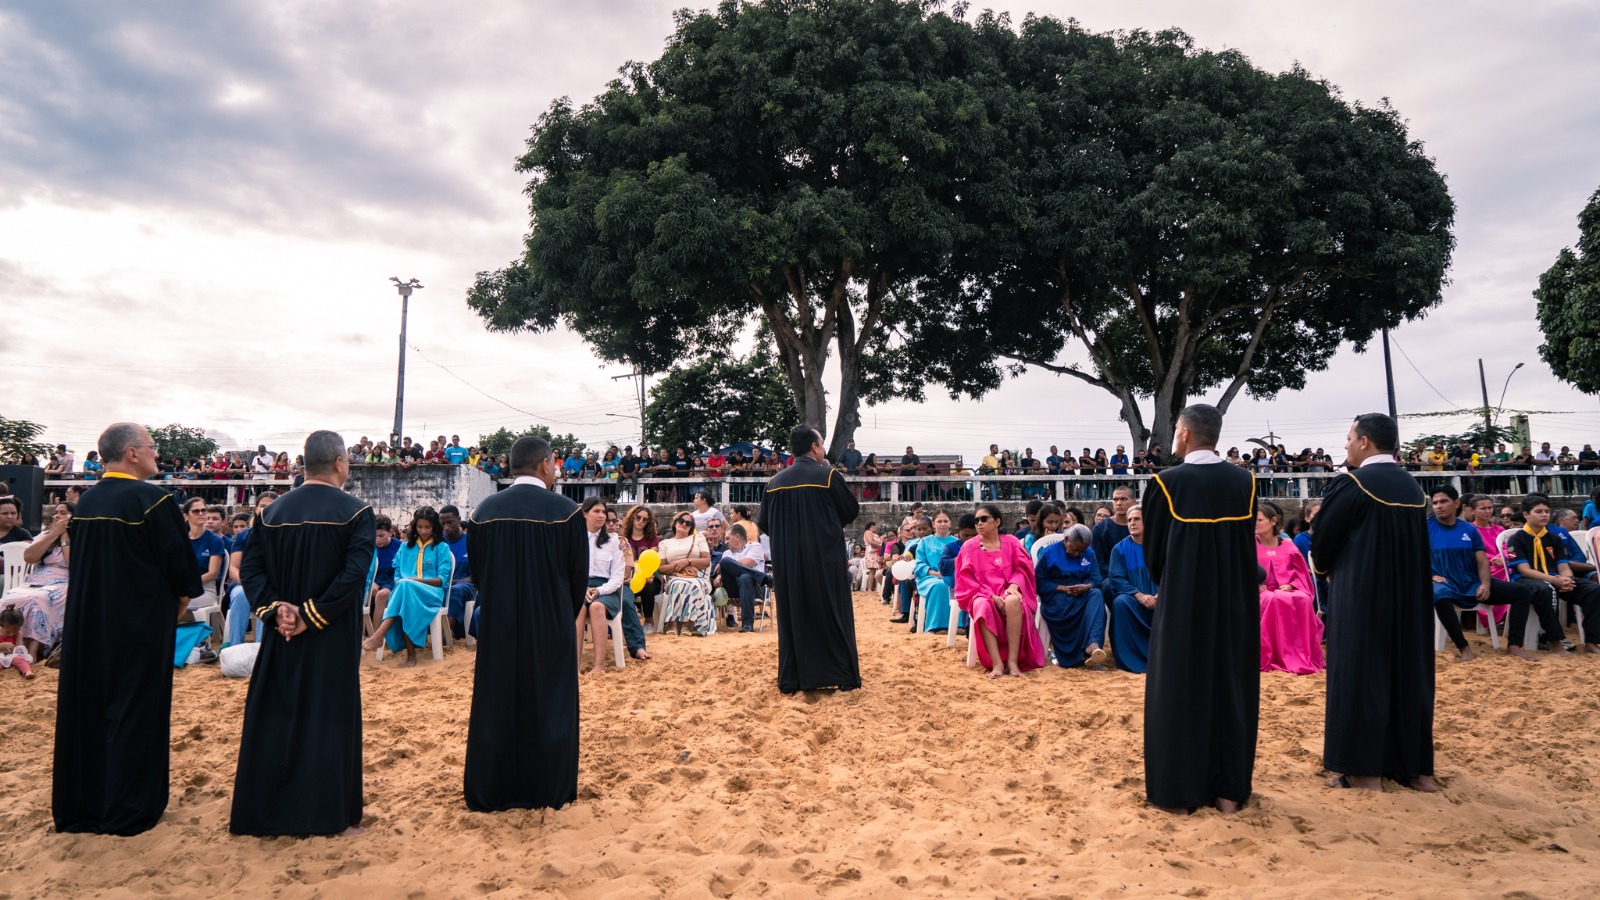 Evangelismo une crianças, jovens e adultos em Altamira, durante a Semana Santa